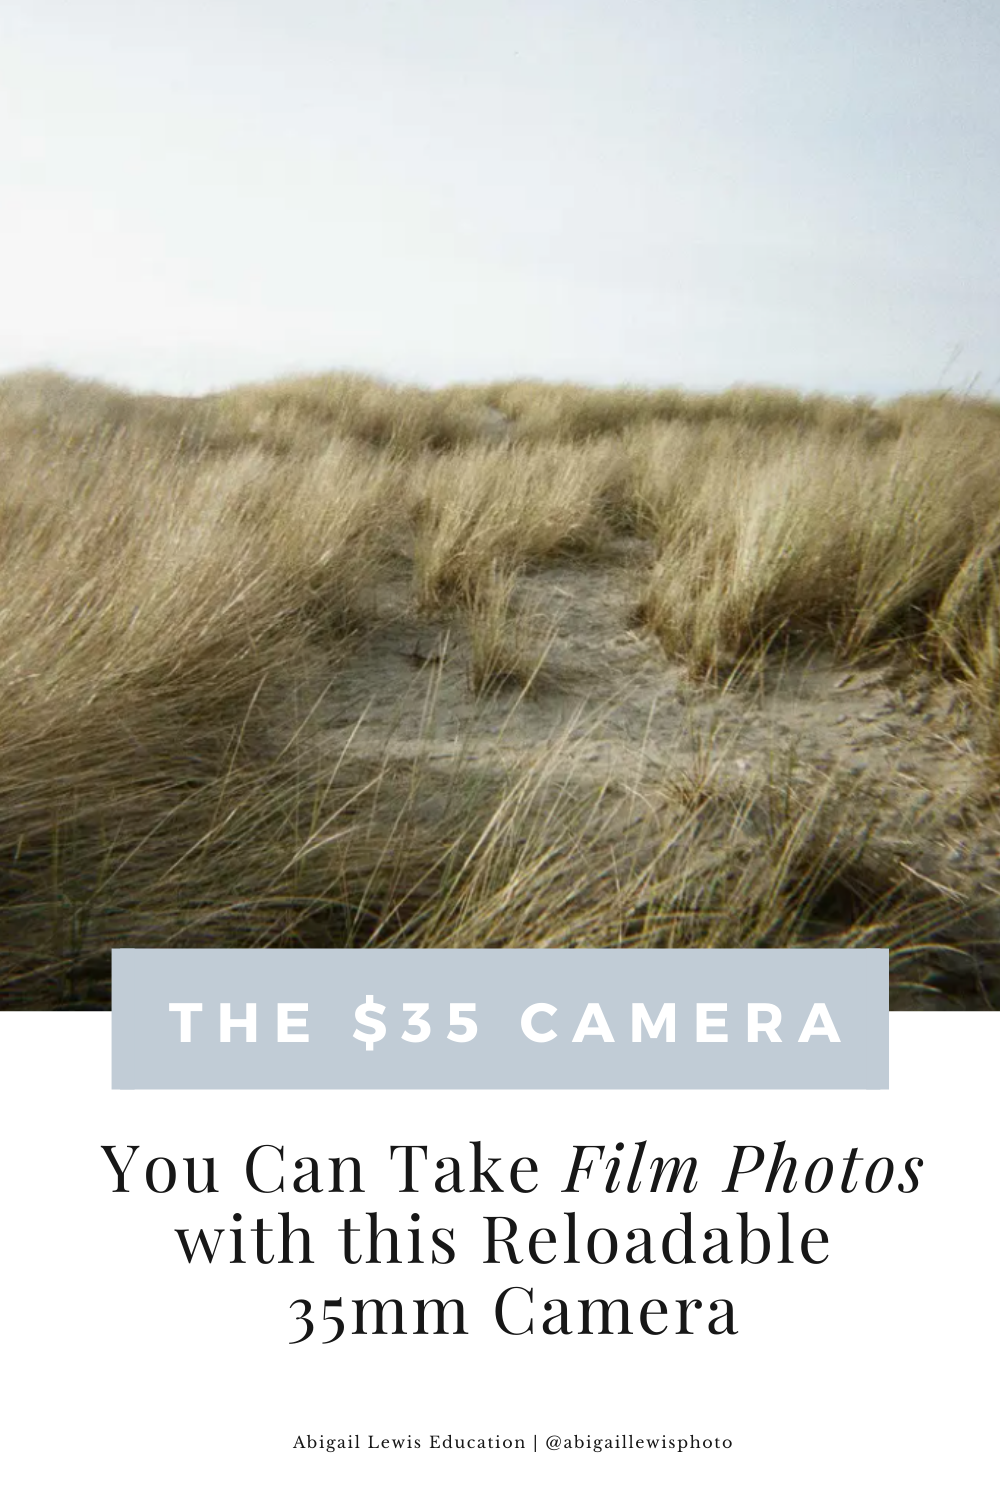 A $35 Film Camera - The New Holga?